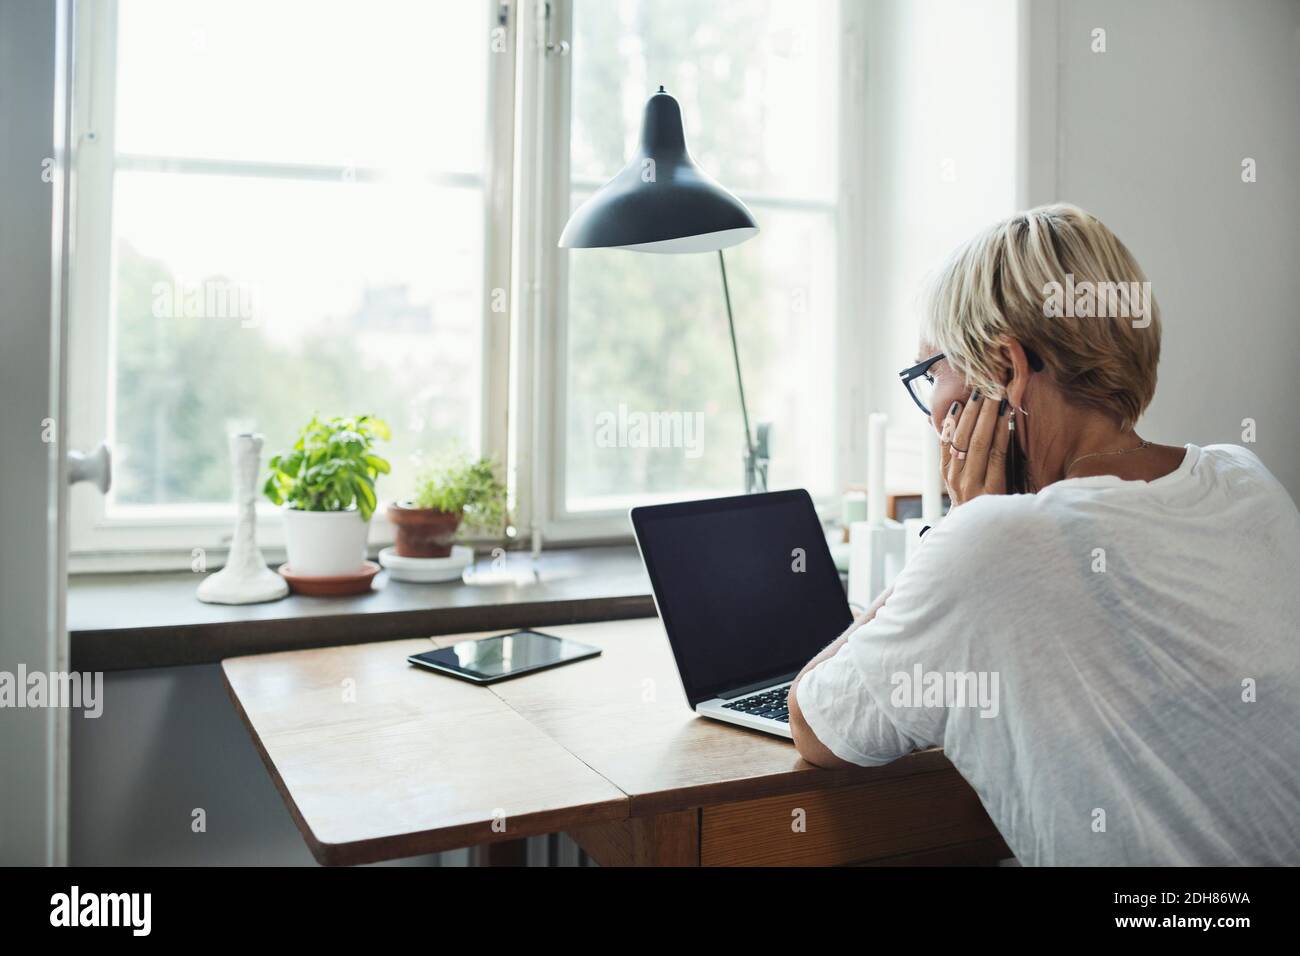 Rückansicht eines Industriedesigners, der im Home Office einen Laptop verwendet Stockfoto